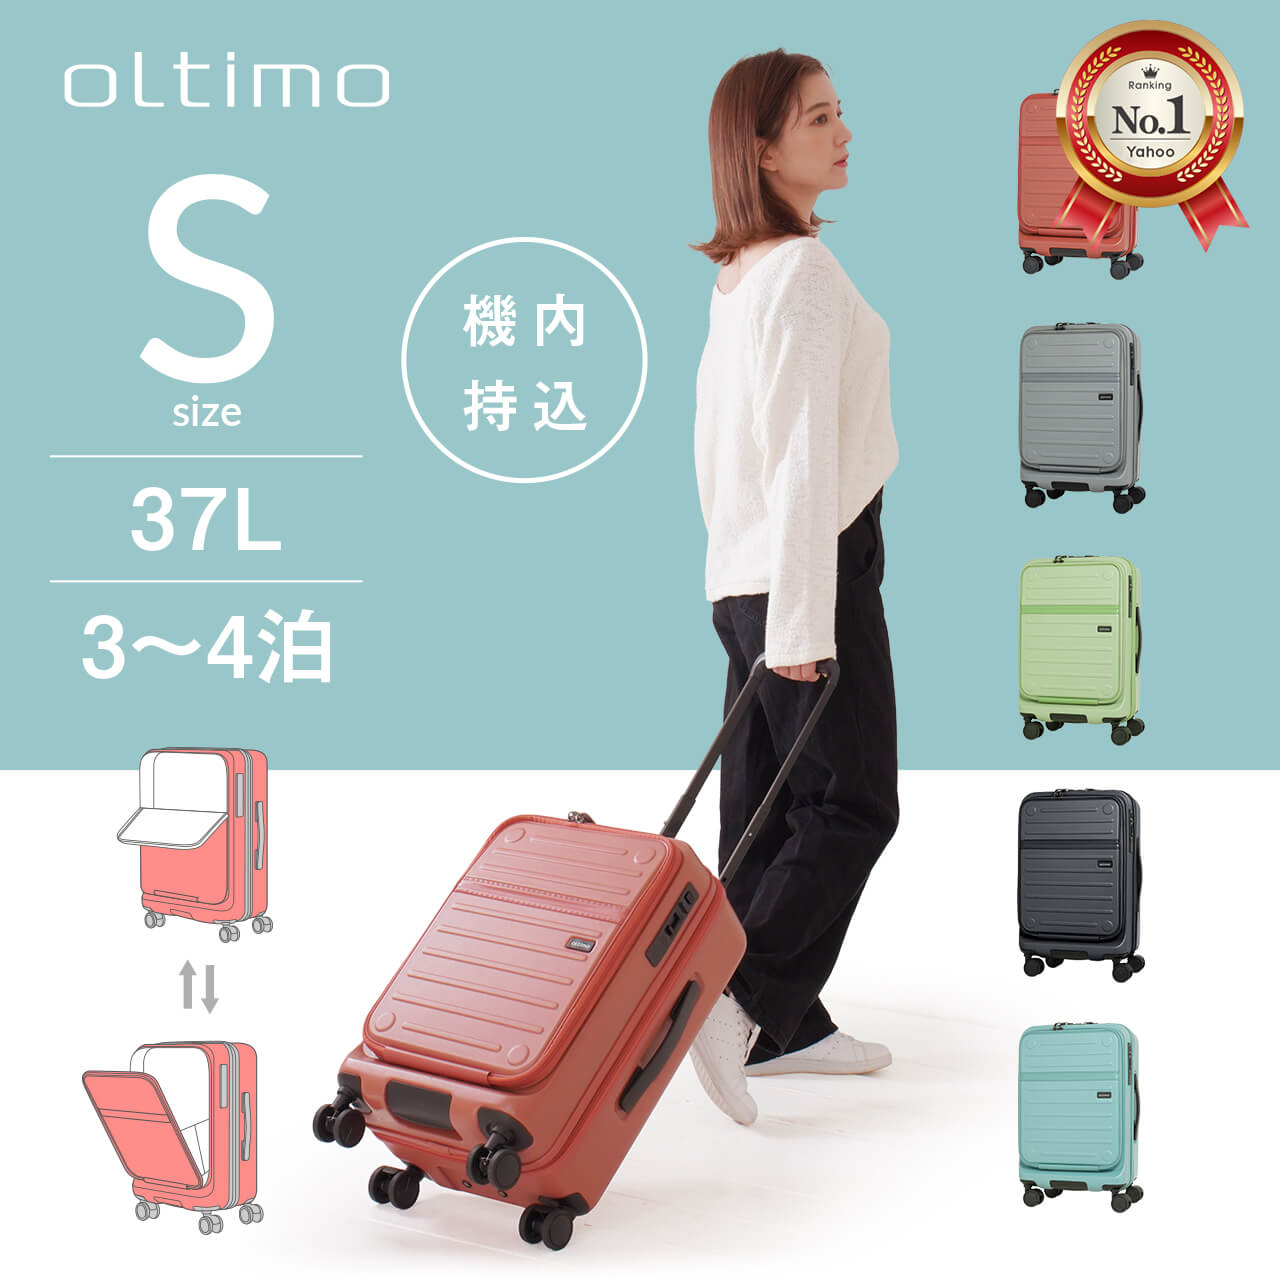 スーツケース キャリーケース oltimo キャリーバッグ 機内持ち込み 小型 3泊4日 オルティモ ストッパー フロントオープン ビジネス  OT-0857-50 ot-0857-50 LOJEL JAPAN ONLINE ヤフー店 通販 